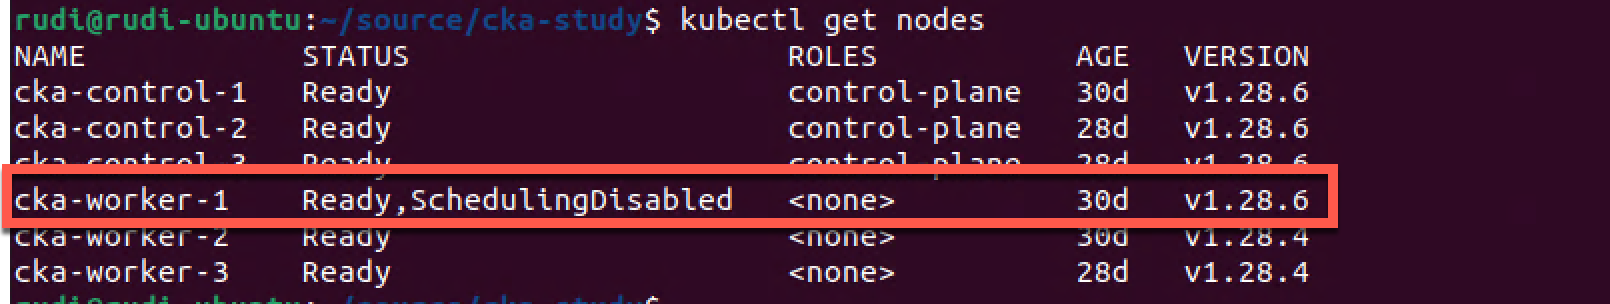 Cluster status after upgrading kubelet on worker node